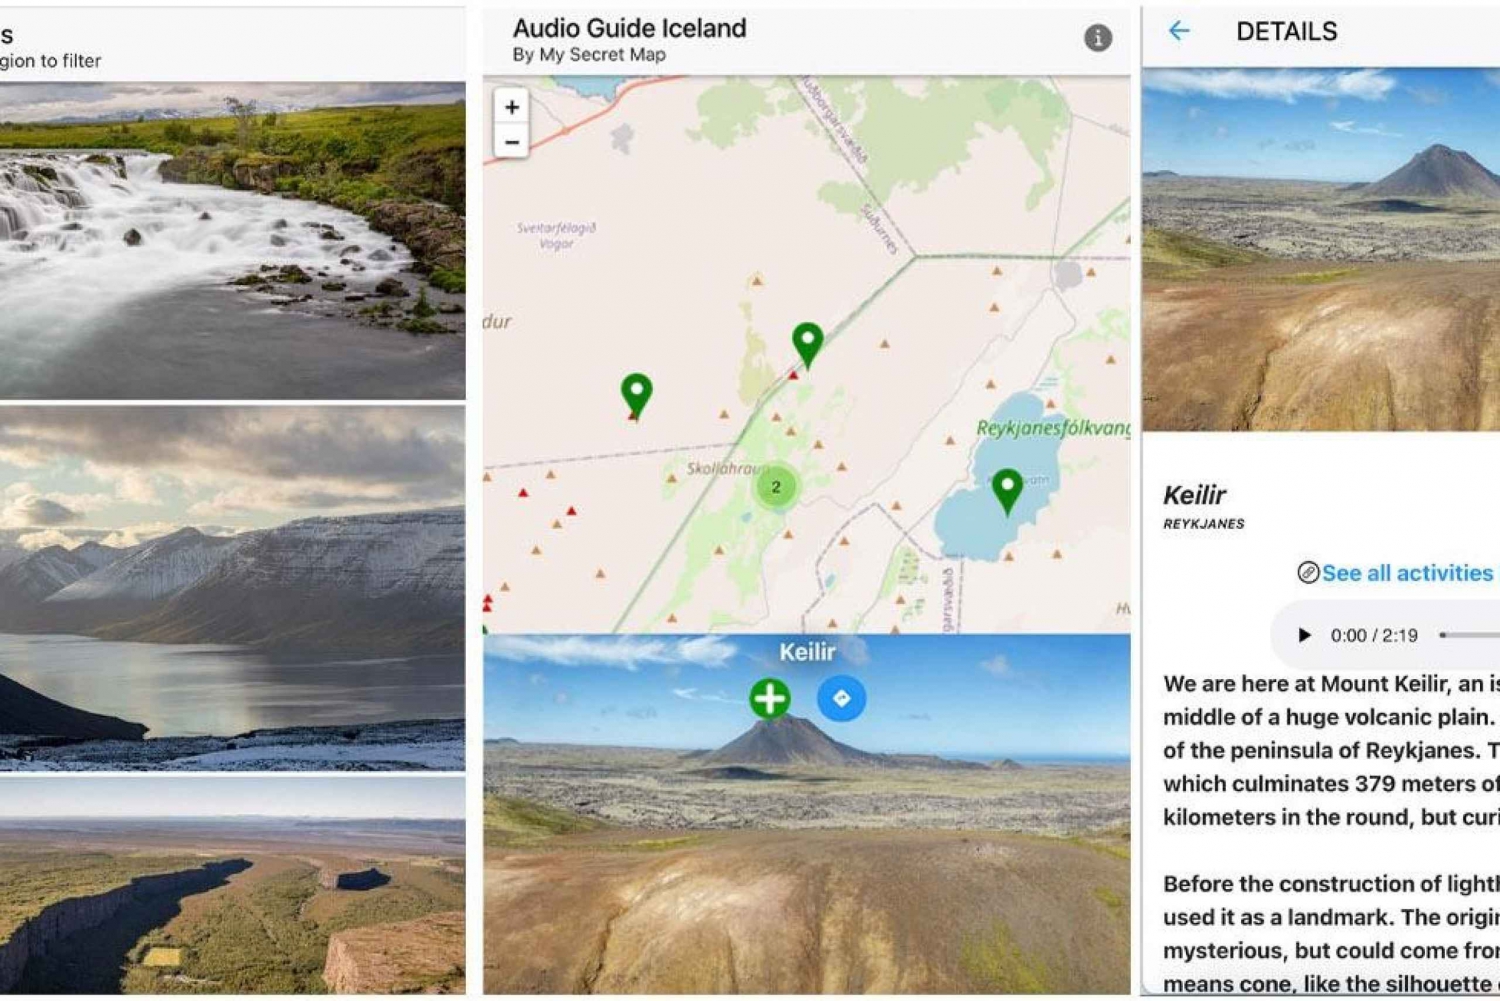 Islanti: Vuorovaikutteinen kartta 200 kohdetta ++